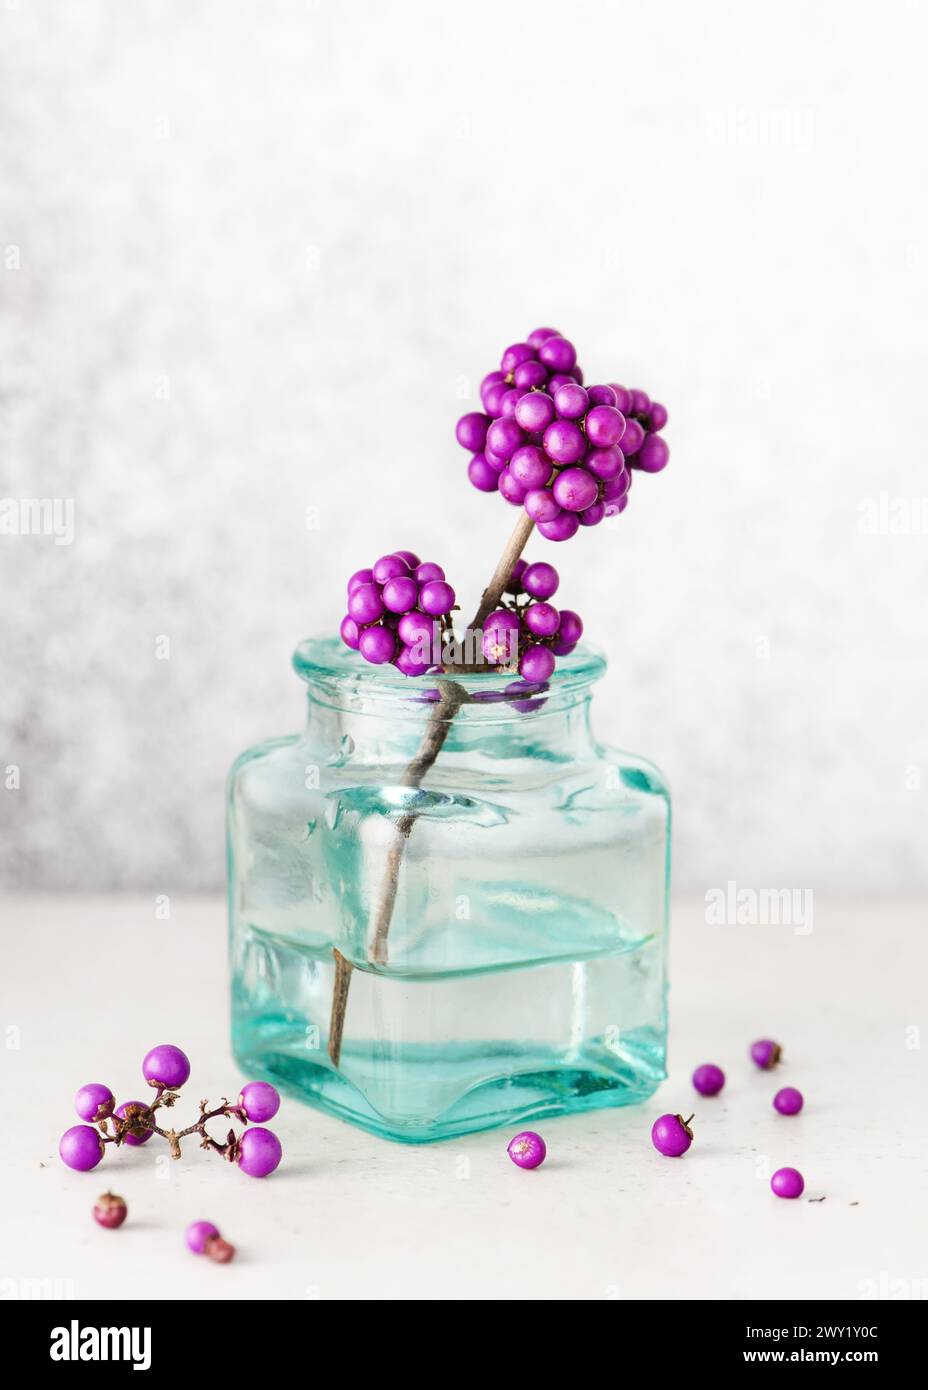 Erstaunlicher Zweig mit violetten Beeren in einer kleinen türkisfarbenen Glasvase. Romantisches minimales florales Stillleben. Stockfoto